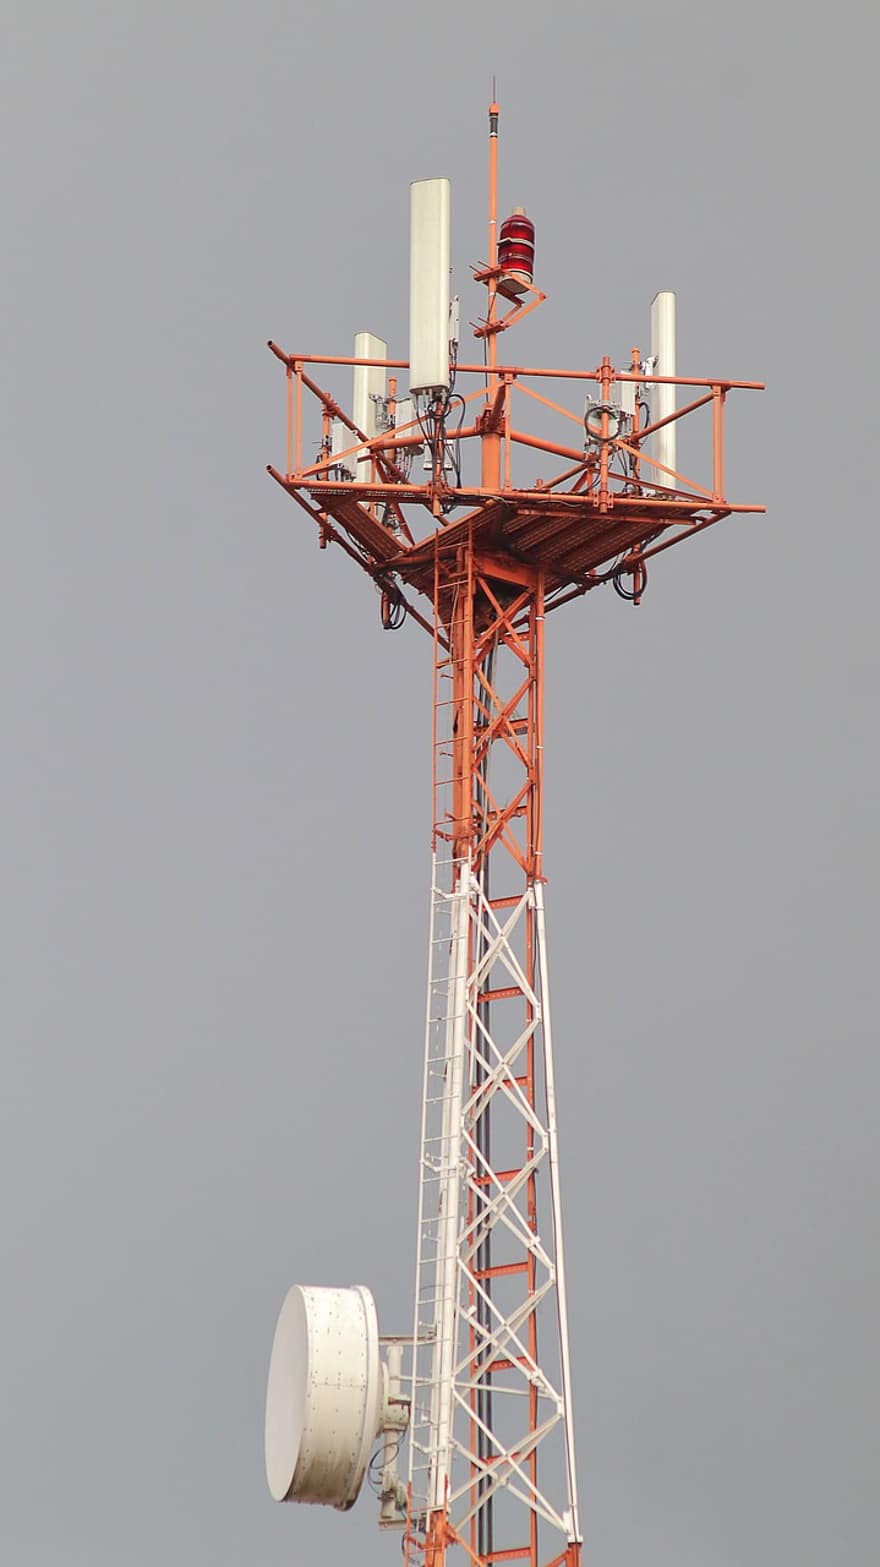 πύργο τηλεπικοινωνιών, ραδιο ιστού, πύργος, κεραία, κατάρτι, δομή, τηλεπικοινωνιών, συχνότητα, μετάδοση, σύνδεση